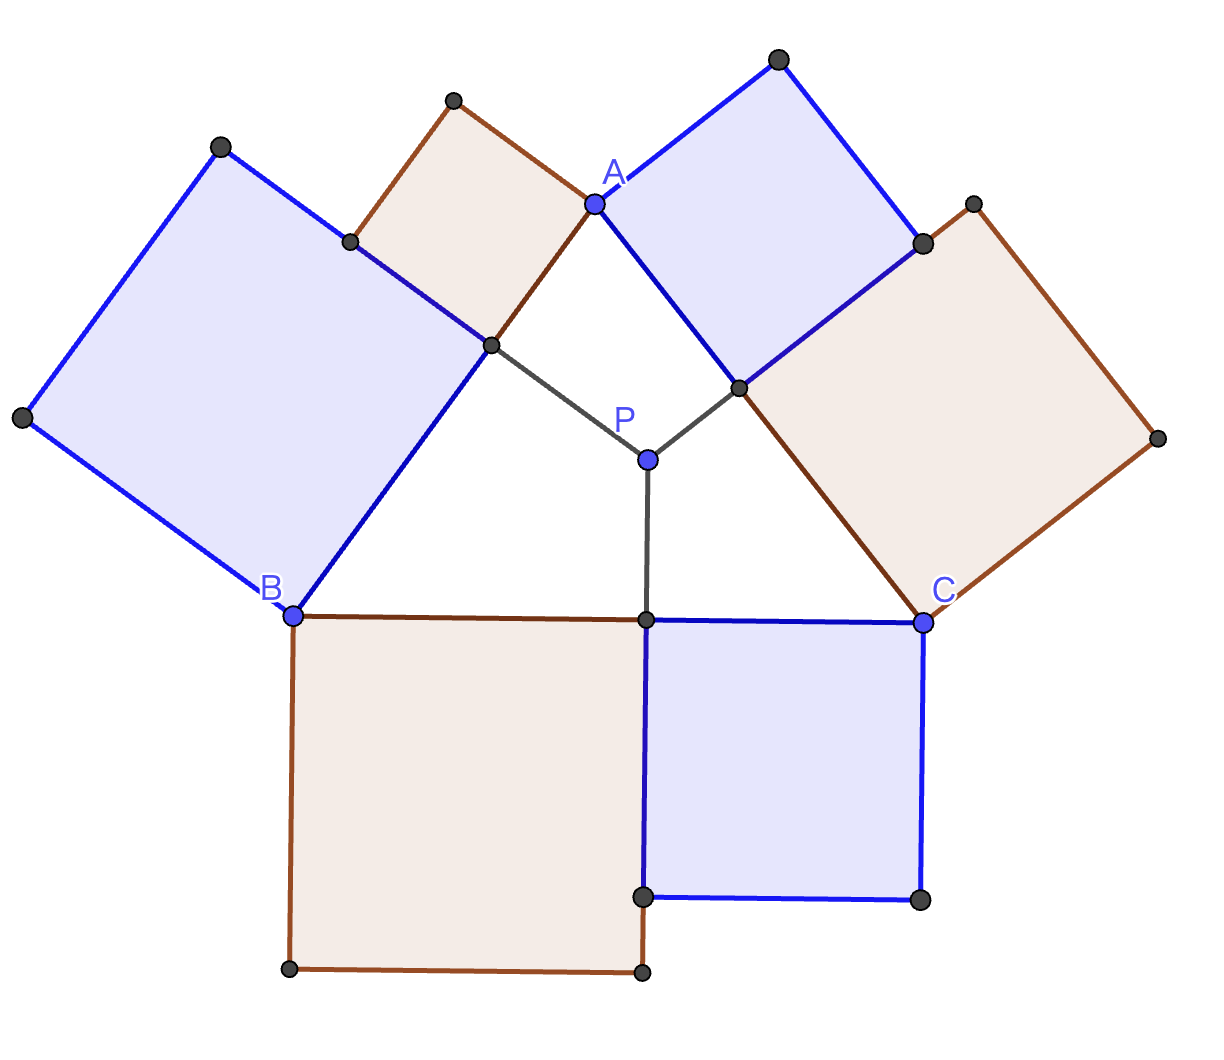 点Pは三角形内部の任意の点